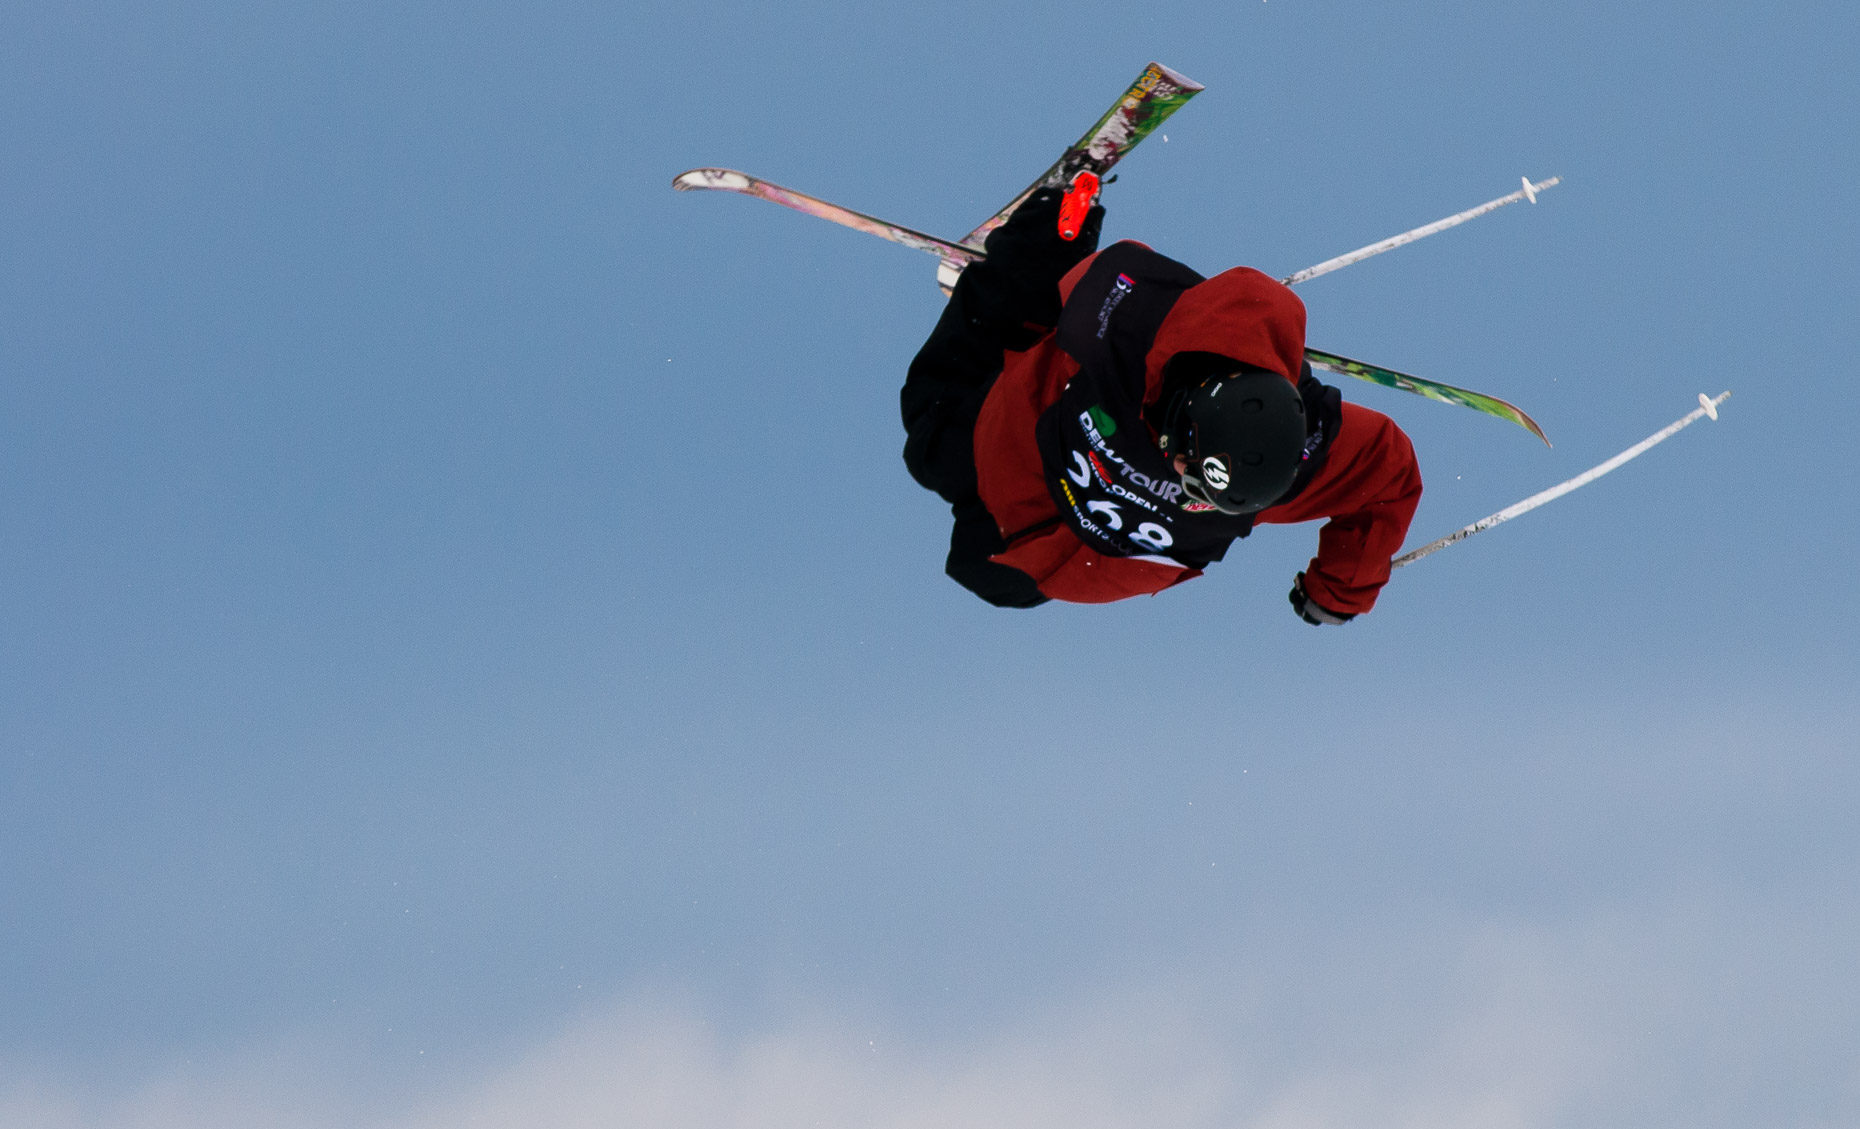 JFennell Ski Sports Photos